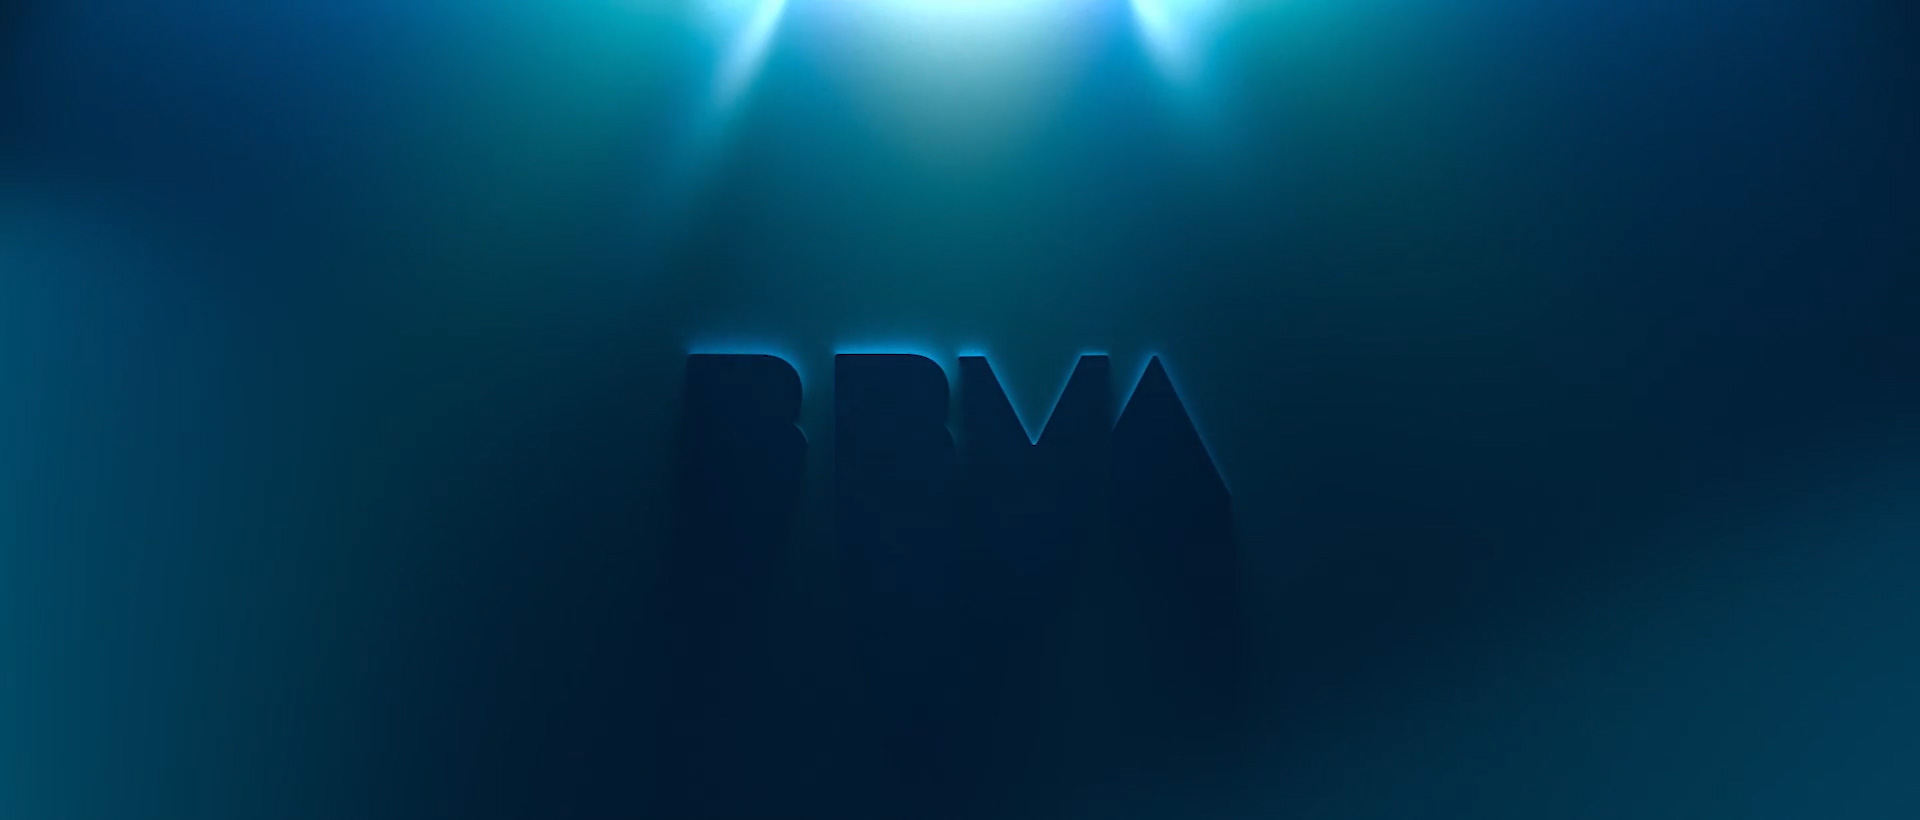 Brand New: New Logo for BBVA by Landor.